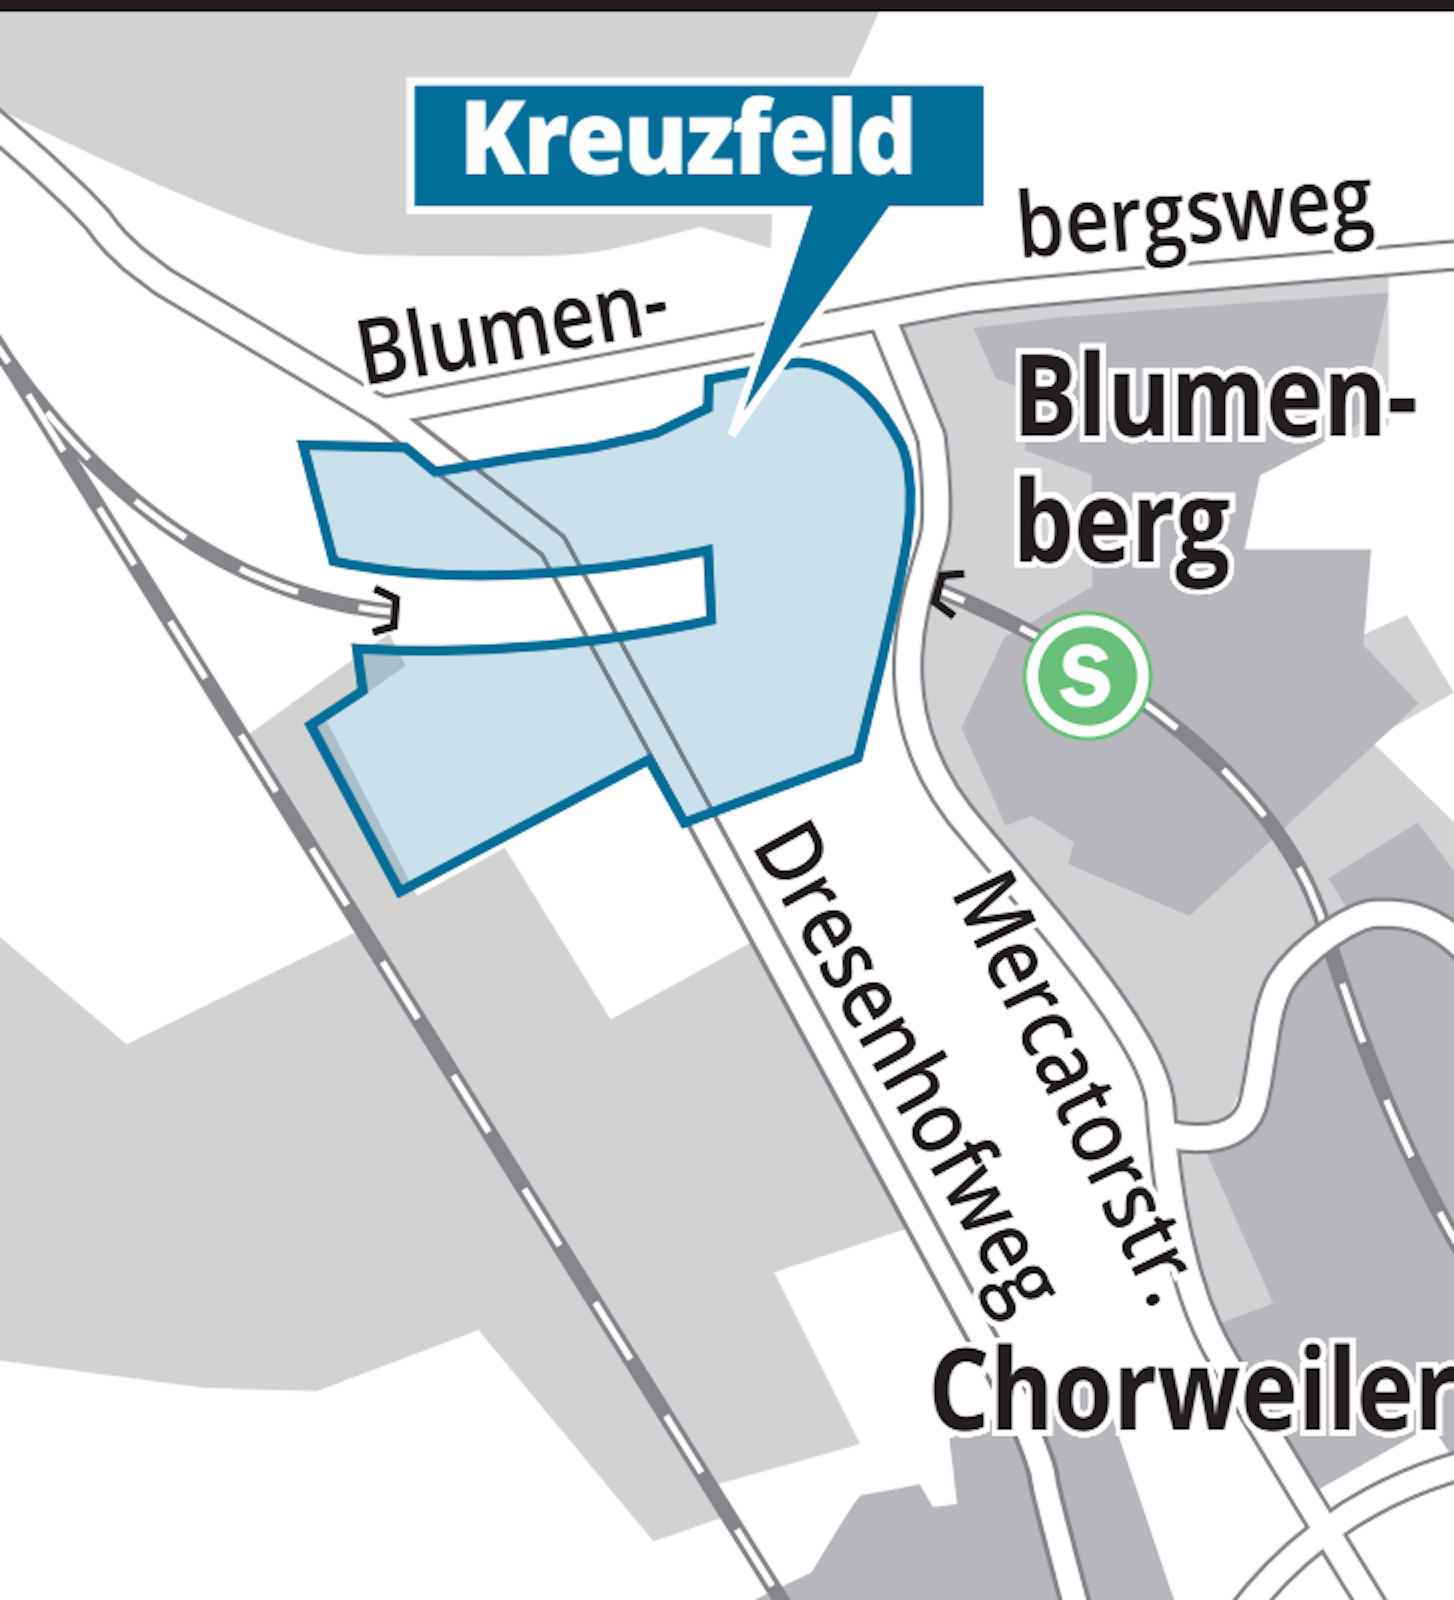 Hier soll der neue Stadtteil Kreuzfeld entstehen.